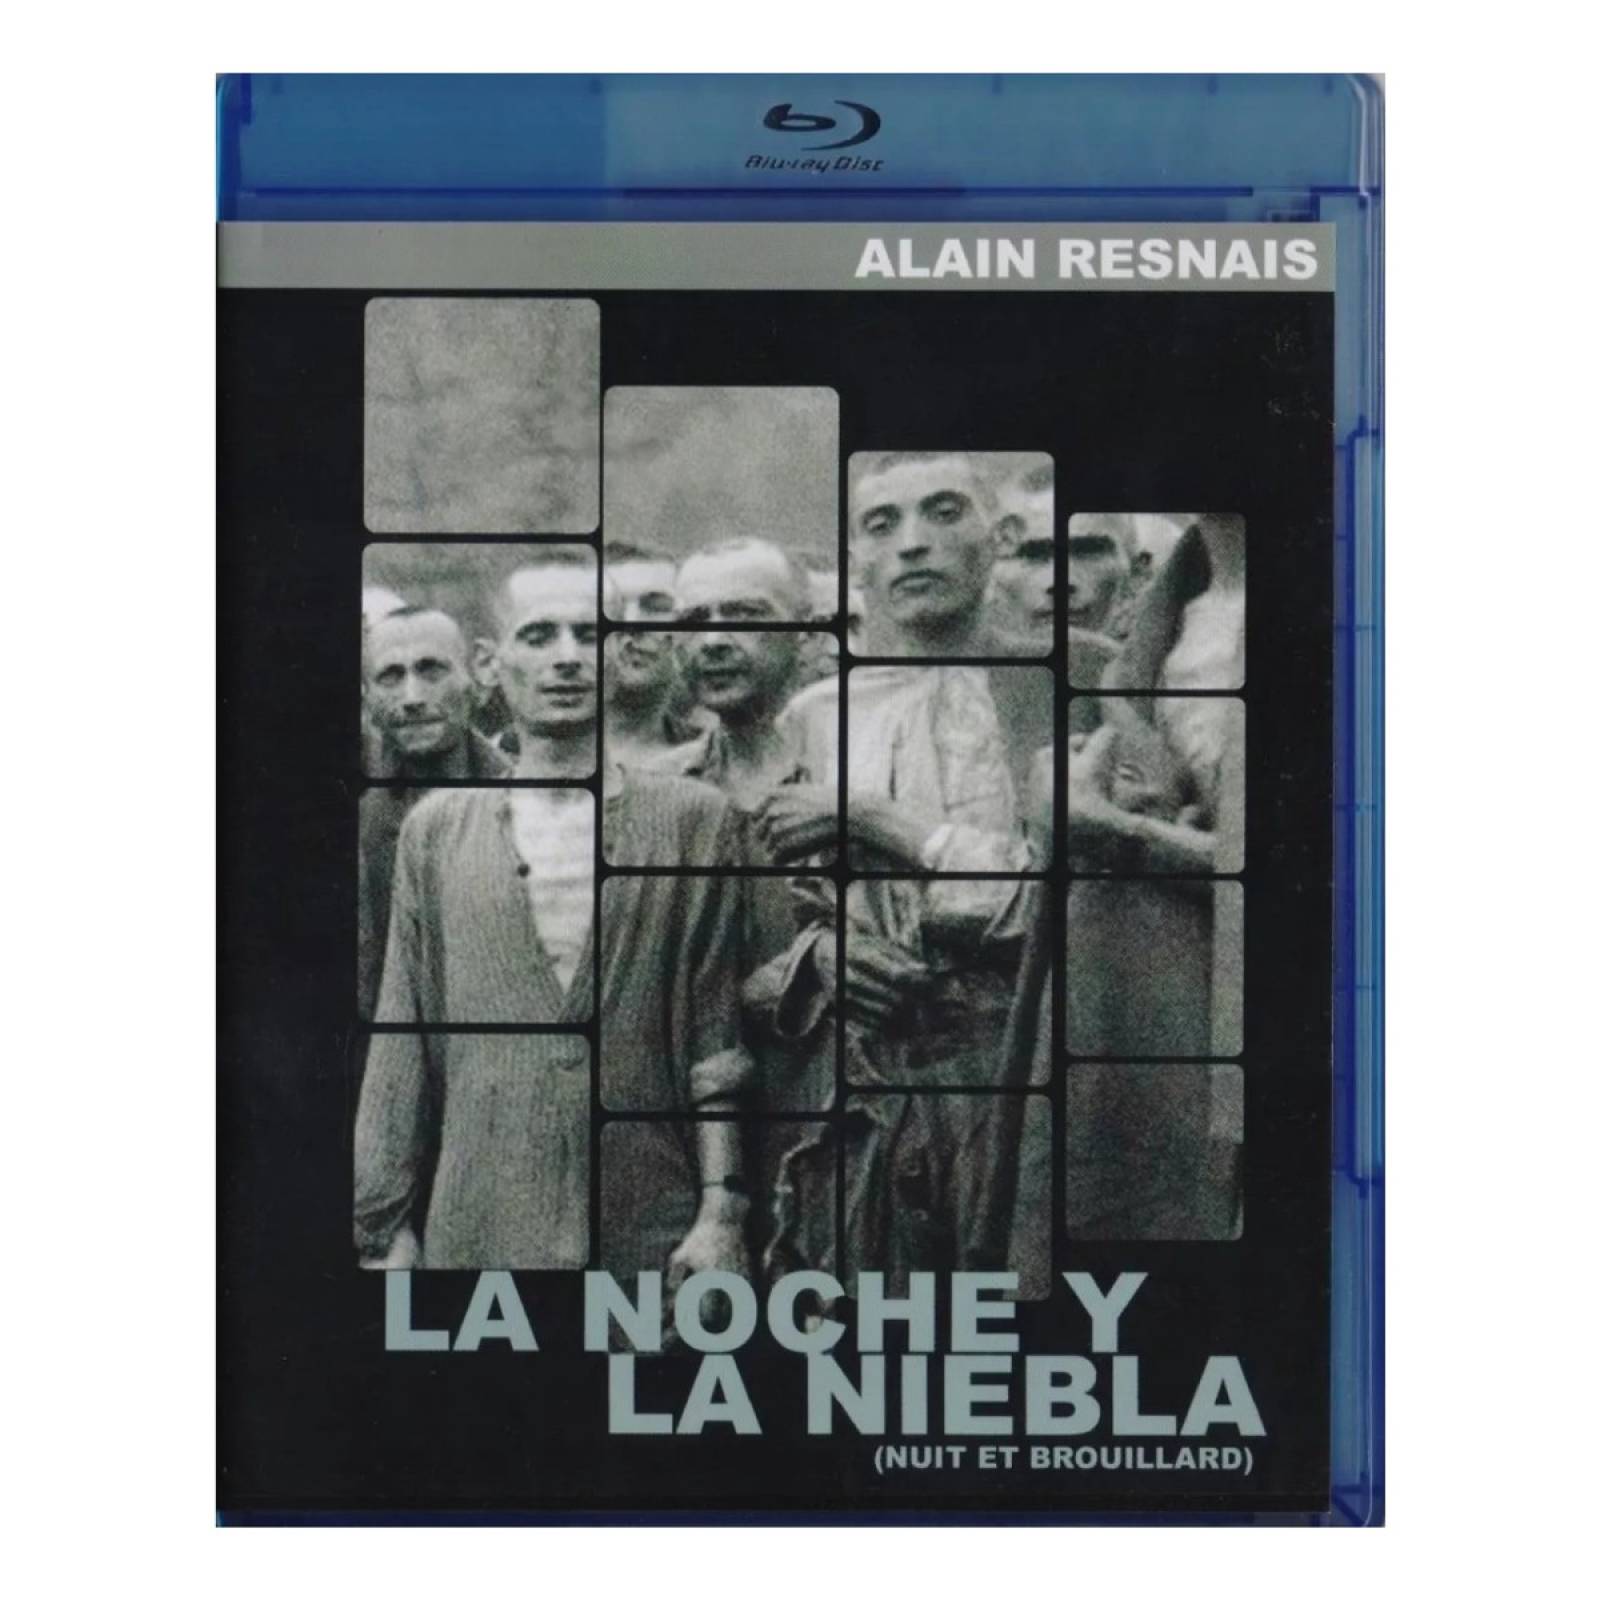 Alain Resnais, Noche y niebla (1955).